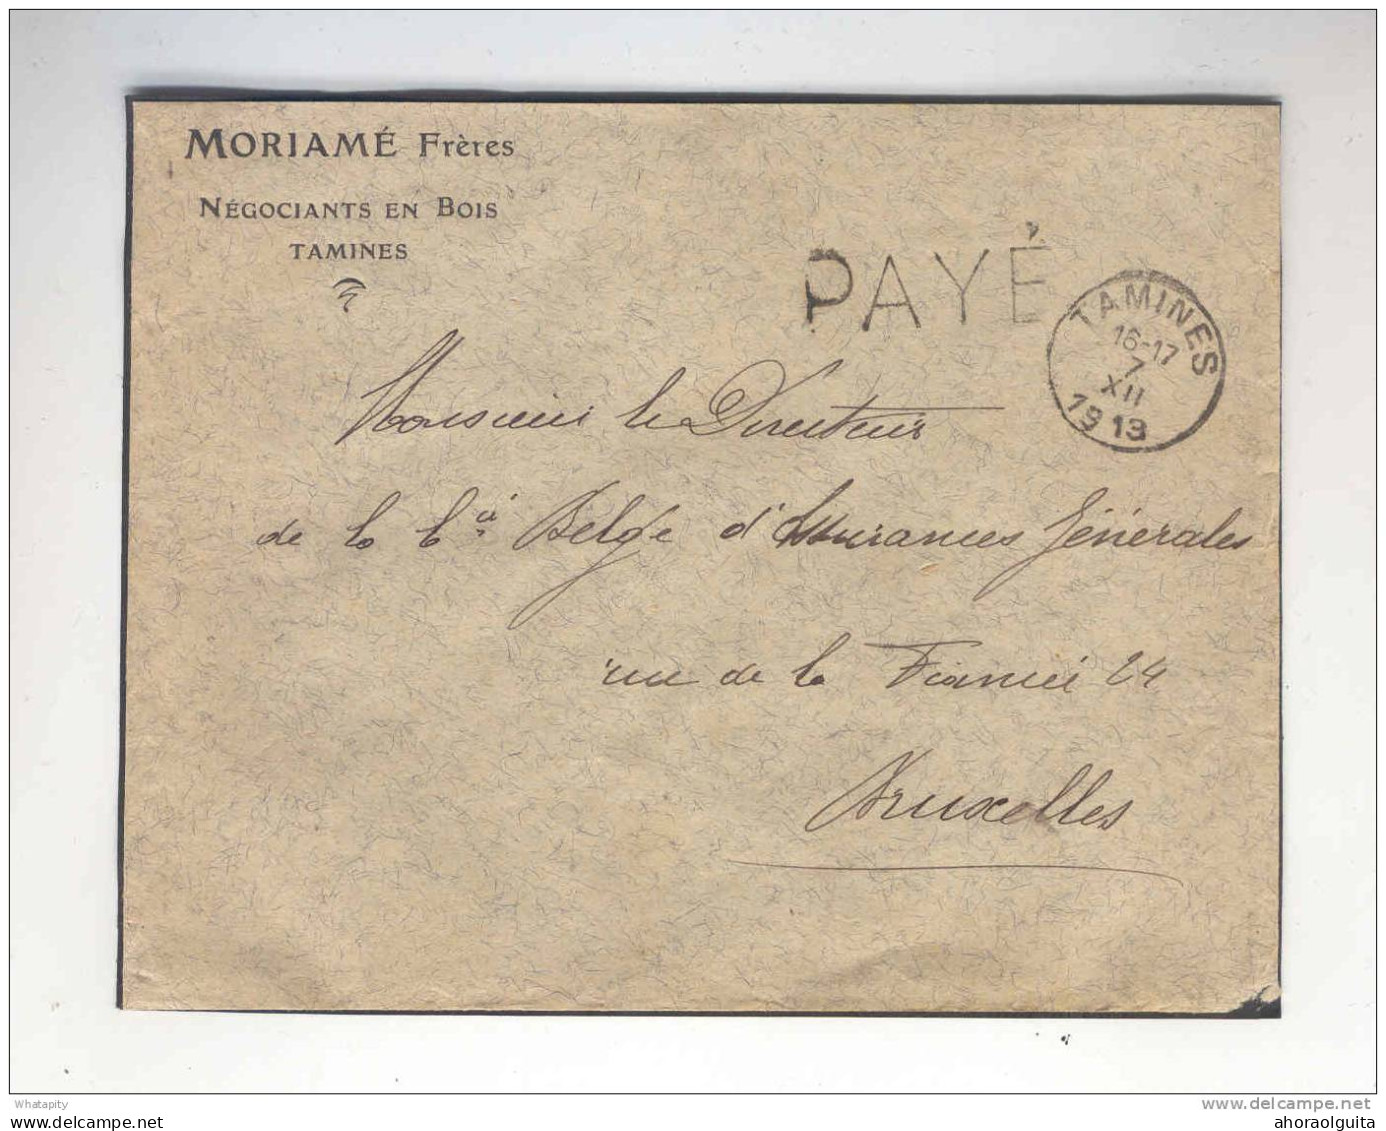 Lettre Cachet Belge TAMINES 7 XII13 (Erreur Pour 18) Griffe PAYE - Entete Moriame Frères , Négociants En Bois --  B7/693 - Fortune (1919)